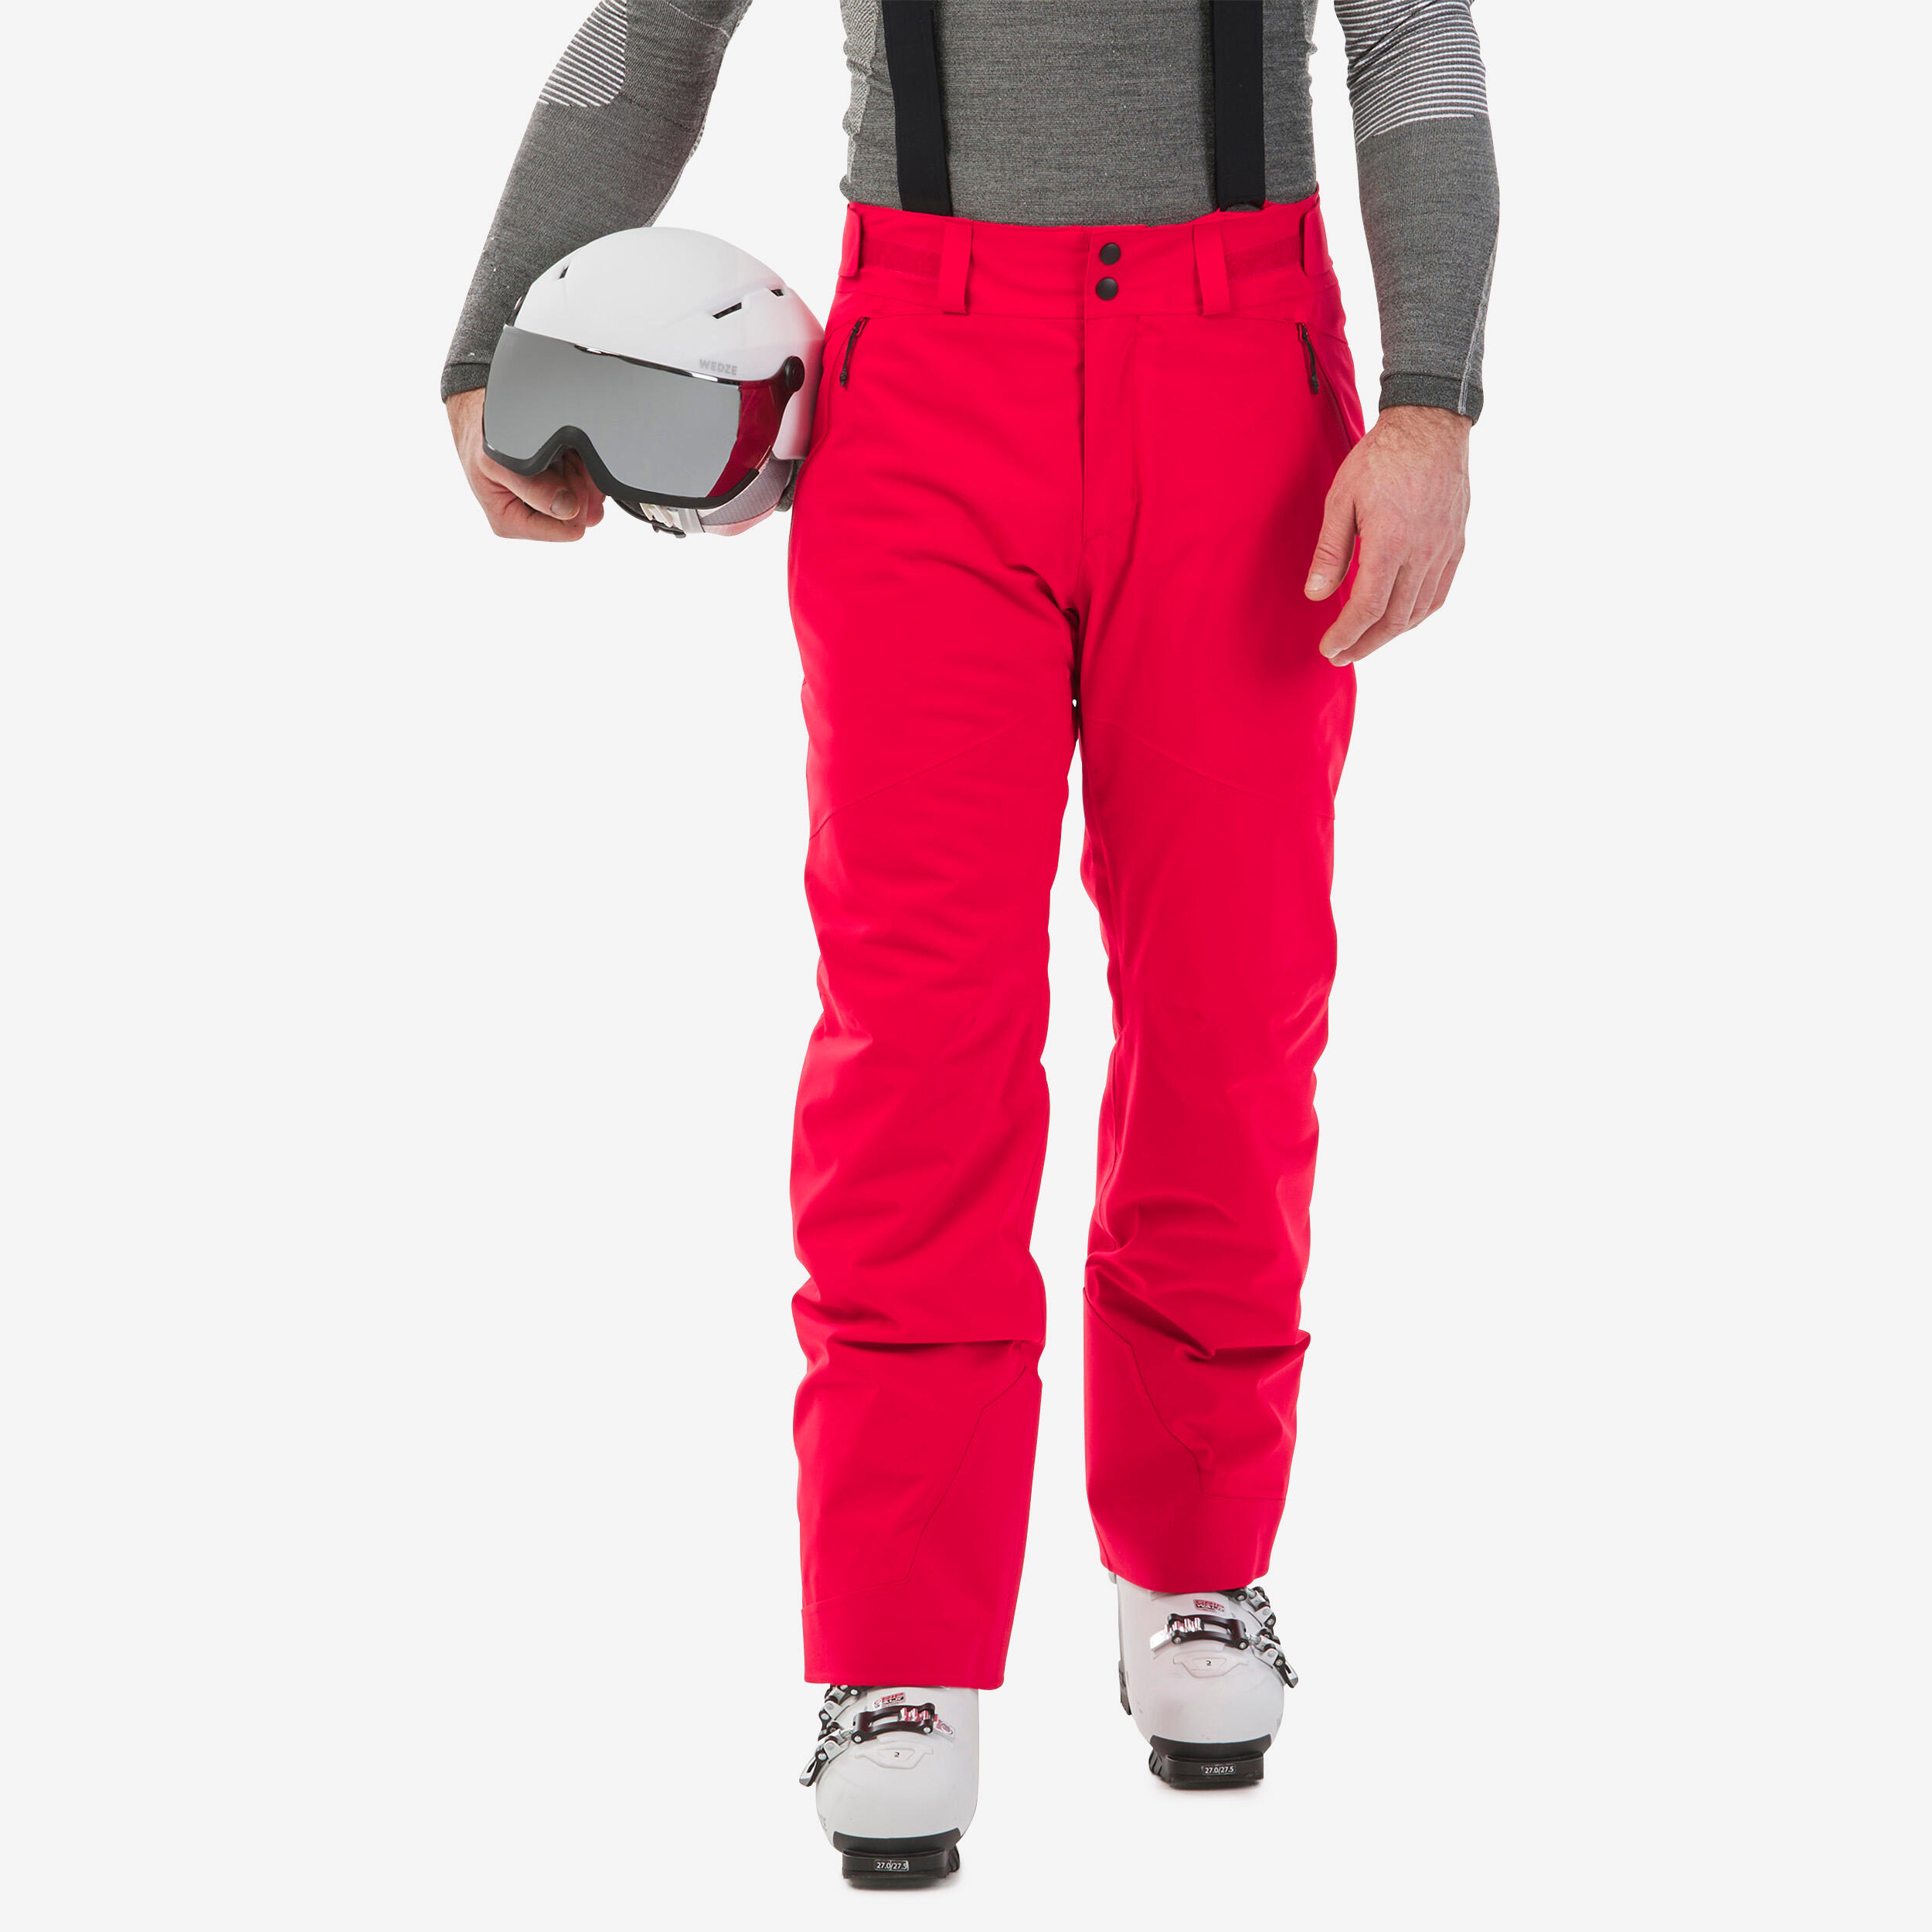 pantalon de ski chaud homme - 580 - rouge - wedze